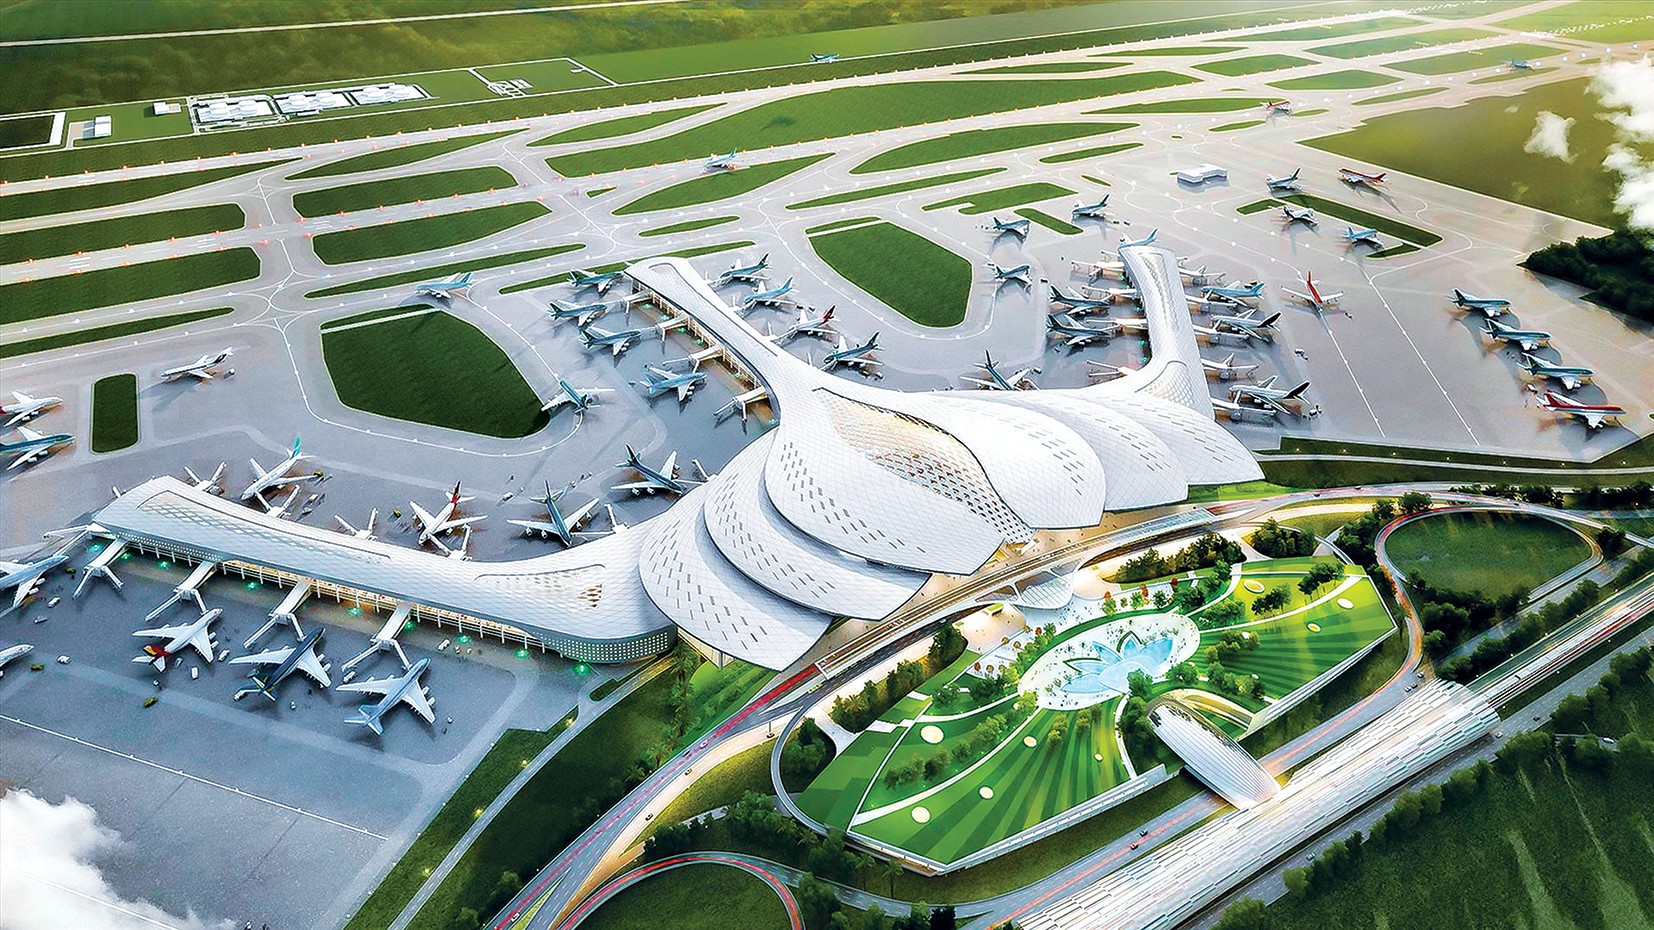 
Phối cảnh dự án Cảng hàng không quốc tế Long Thành.
